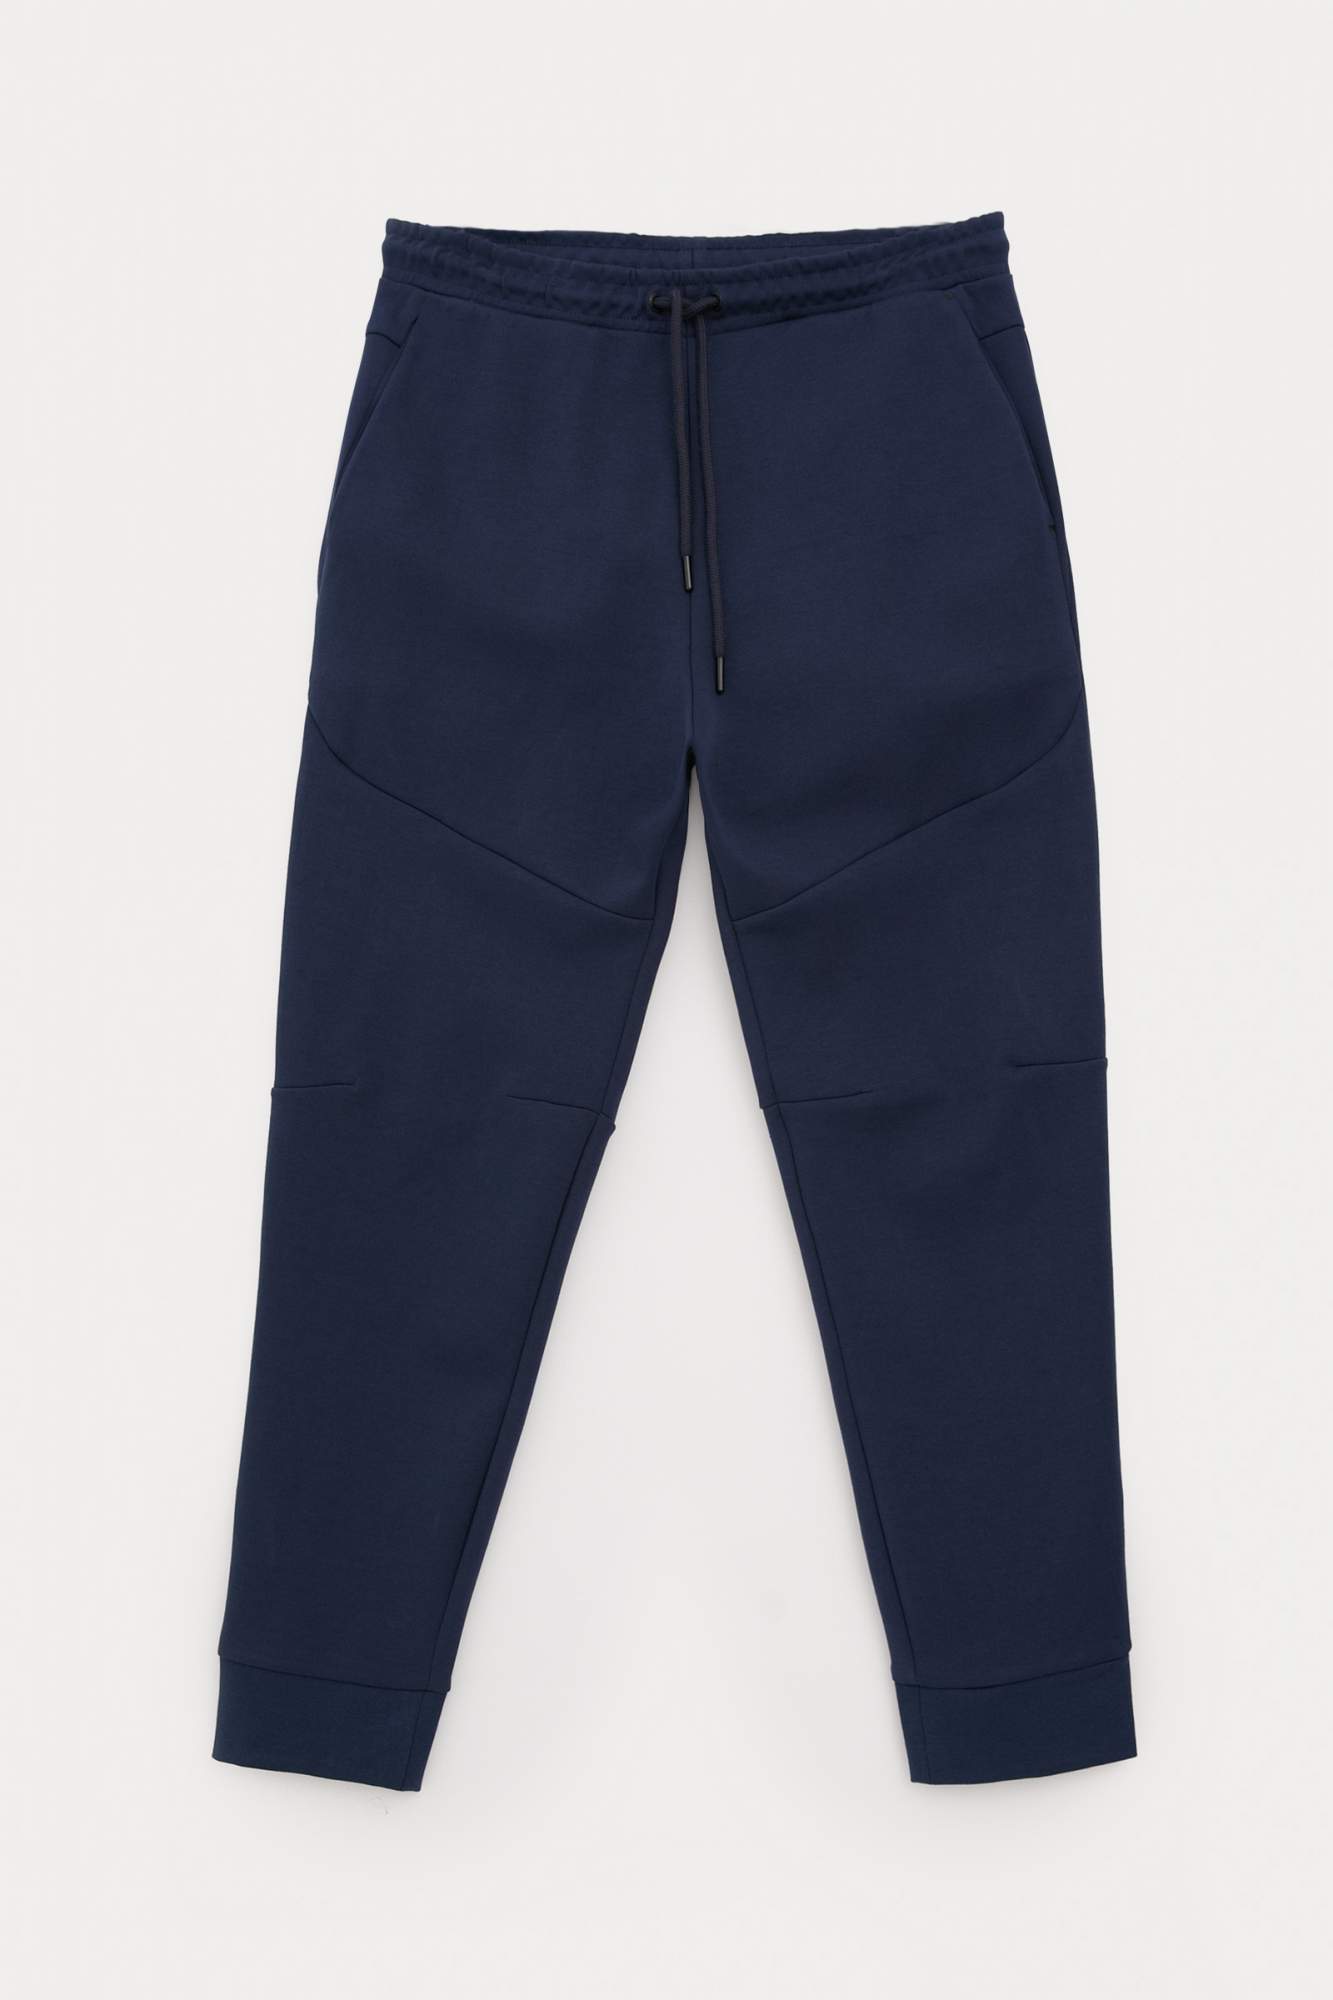 Спортивные брюки мужские Finn Flare FBC23011 синие M